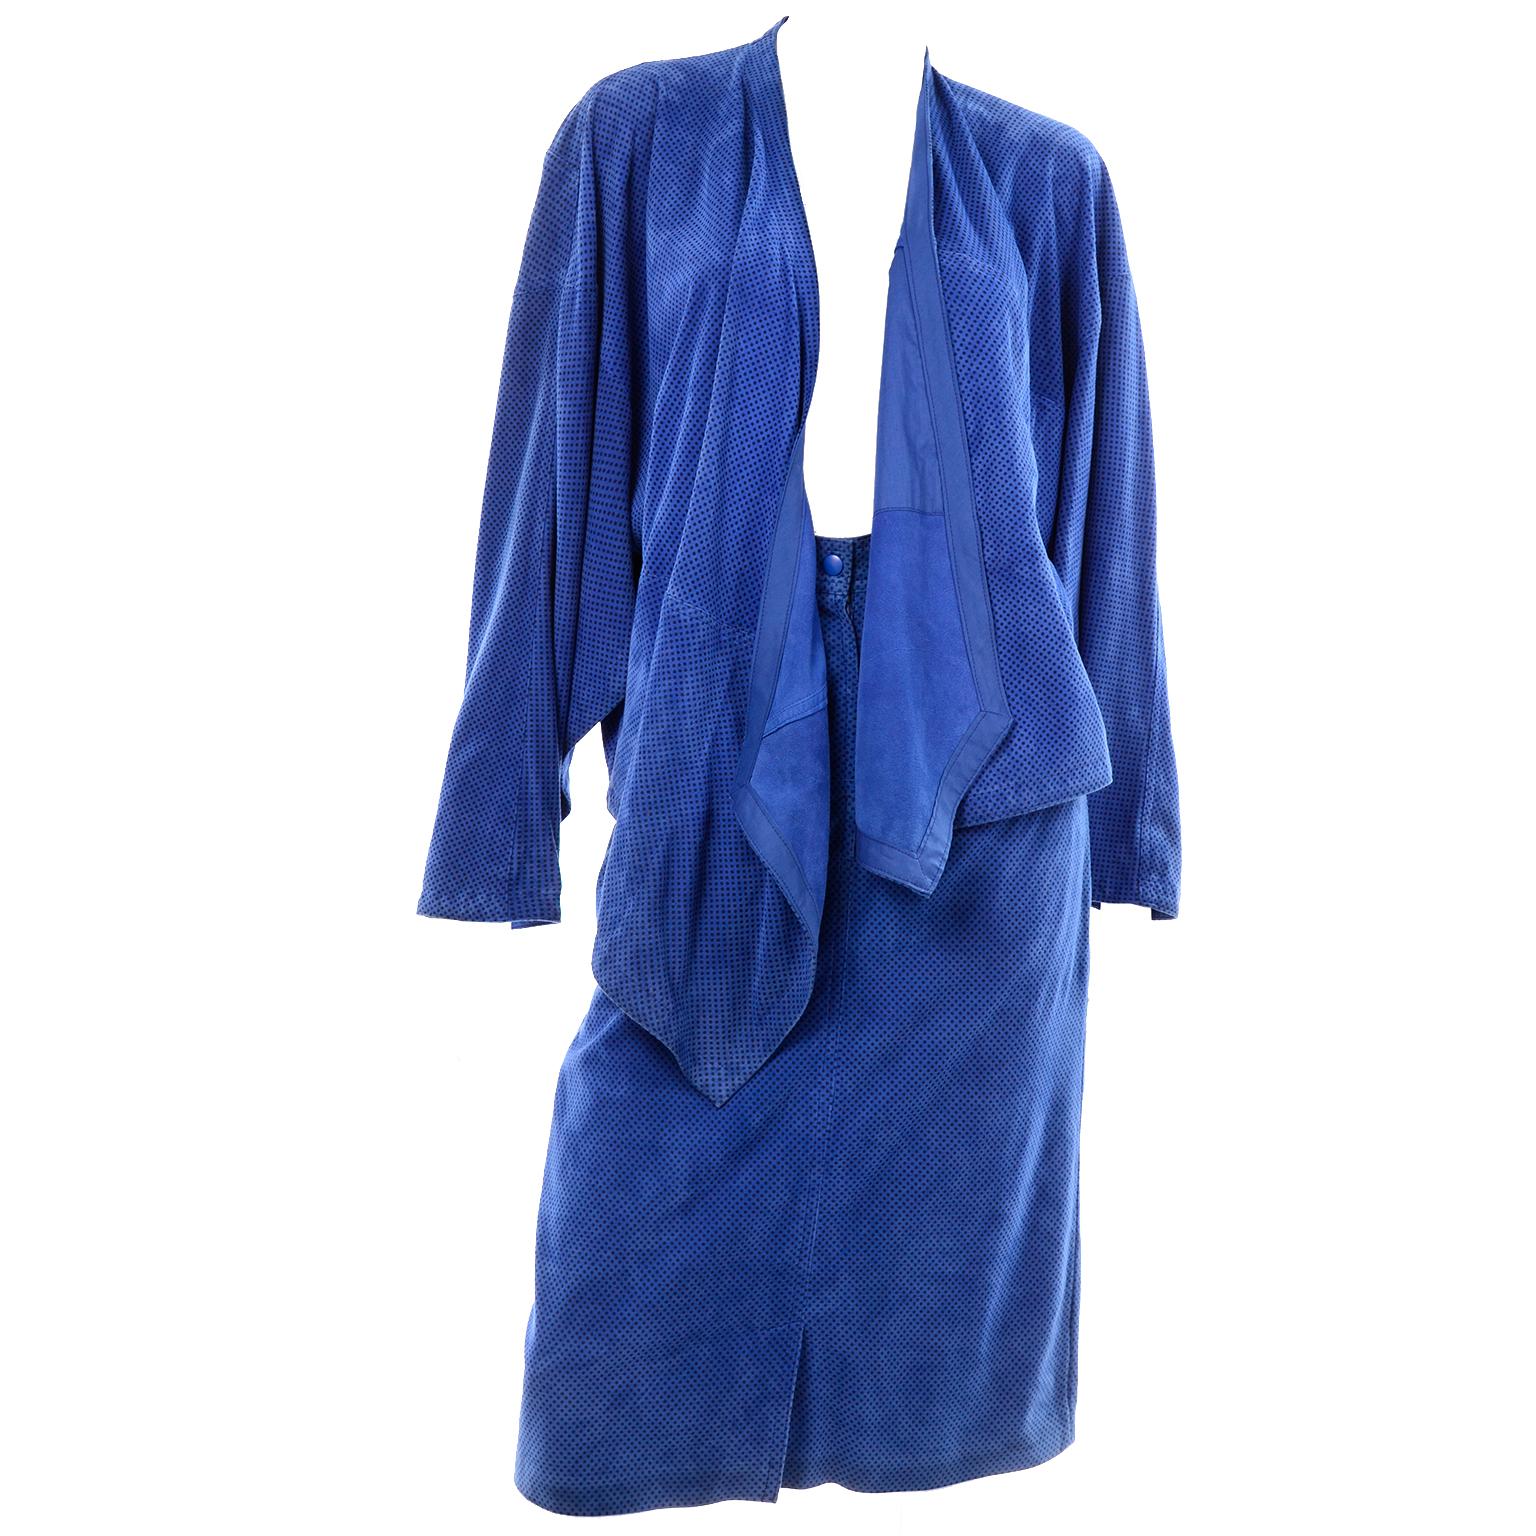 Il s'agit d'un superbe ensemble deux pièces conçu par Margaretha Ley pour Escada dans les années 1980. Le costume est en daim bleu avec de petits pois noirs et comprend une jupe et une veste enveloppante ouverte sur le devant avec des poches. La